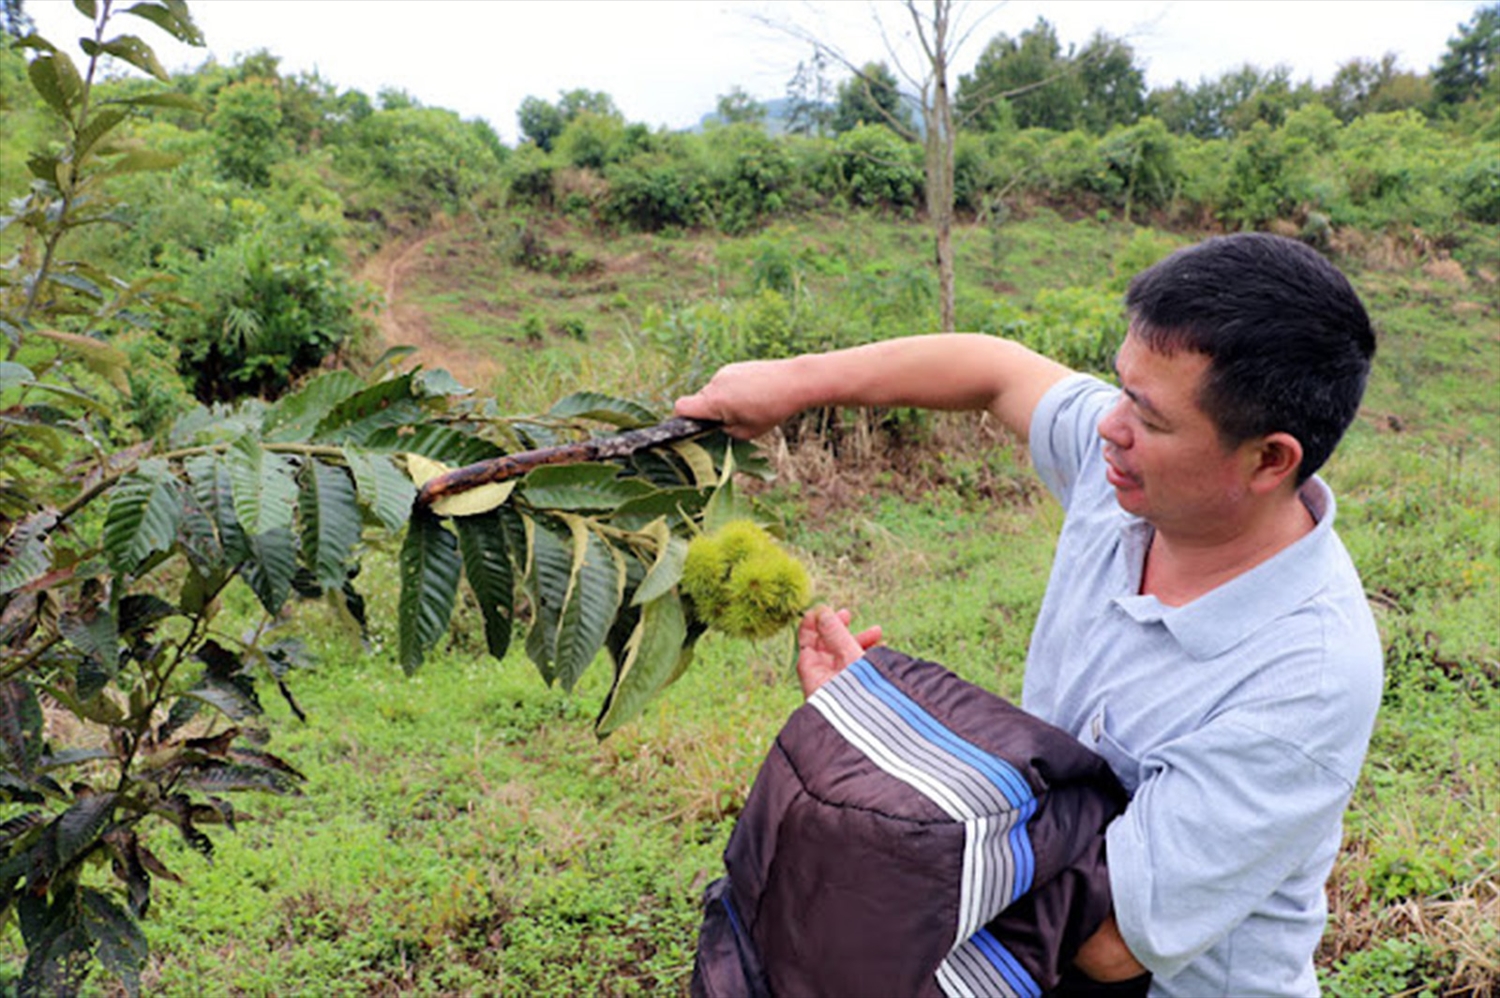  Huyện Trùng Khánh đã chú trọng phát triển cây hạt dẻ trở thành cây chủ lực của địa phương.